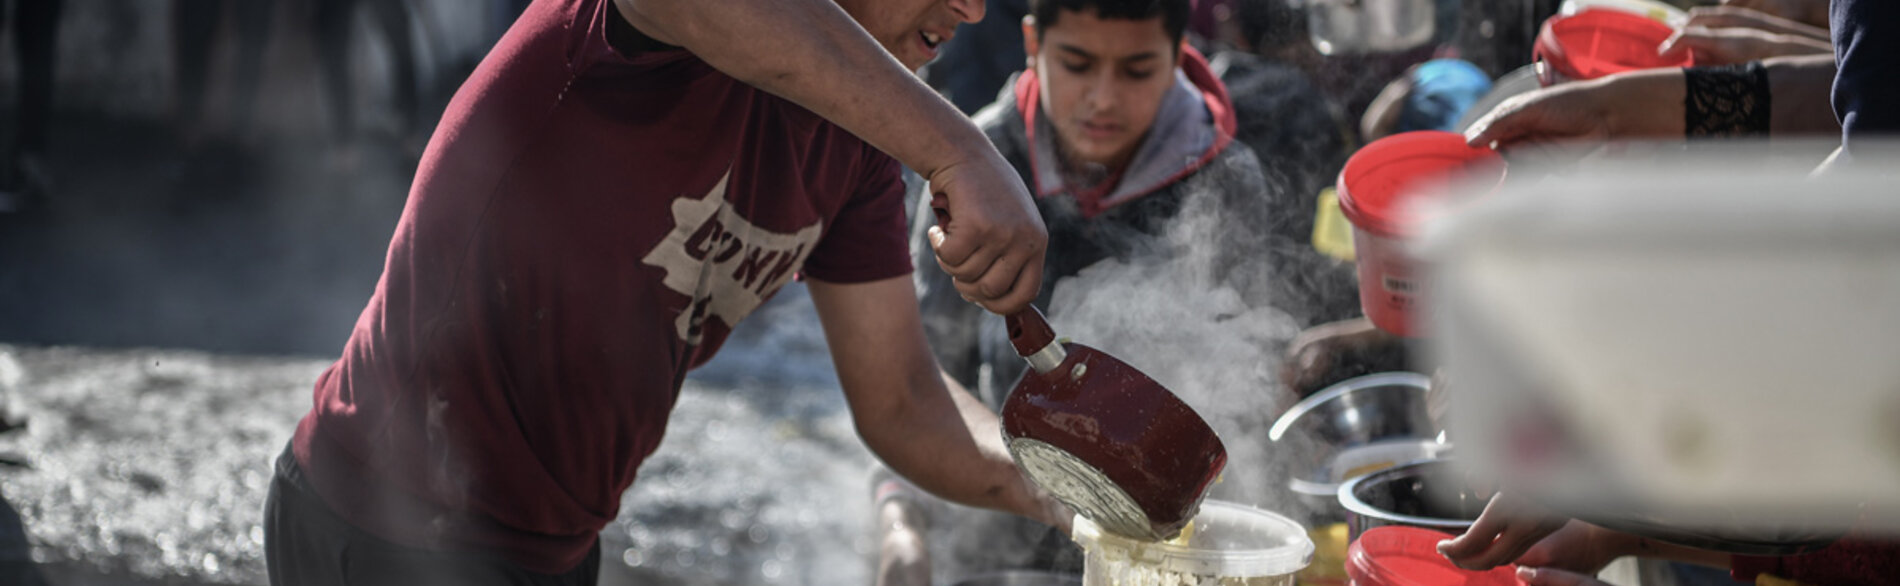 متطوع يوزع الطعام على الناس في رفح، جنوب غزة. ويواجه ما لا يقل عن 576,000 إنسان في غزة – ربع سكانها – مستويات كارثية من انعدام الأمن الغذائي ويتعرّضون لخطر المجاعة. تصوير اليونيسف/عبد زقوت